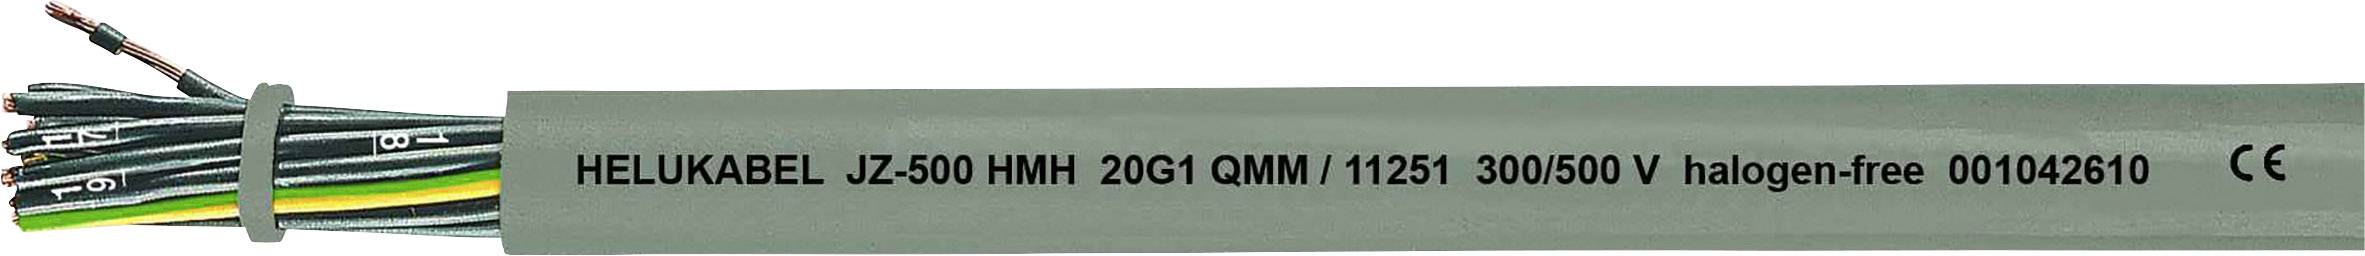 HELUKABEL JZ-500 HMH Steuerleitung 7 G 2.50 mm² Grau 11281-1000 1000 m